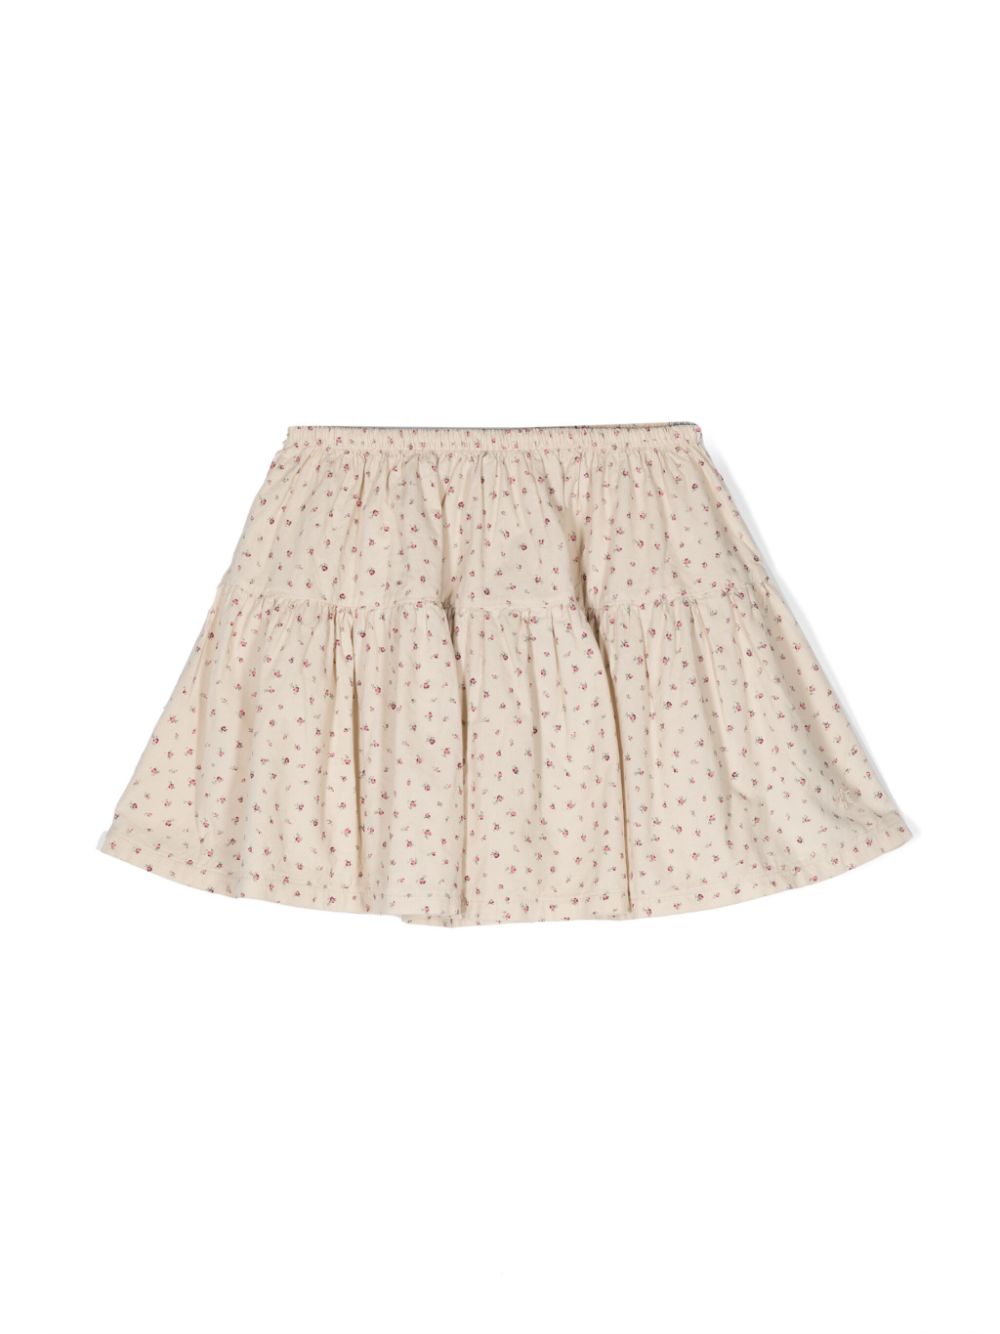 TOCOTO VINTAGE KIDS floral-print cotton miniskirt Beige